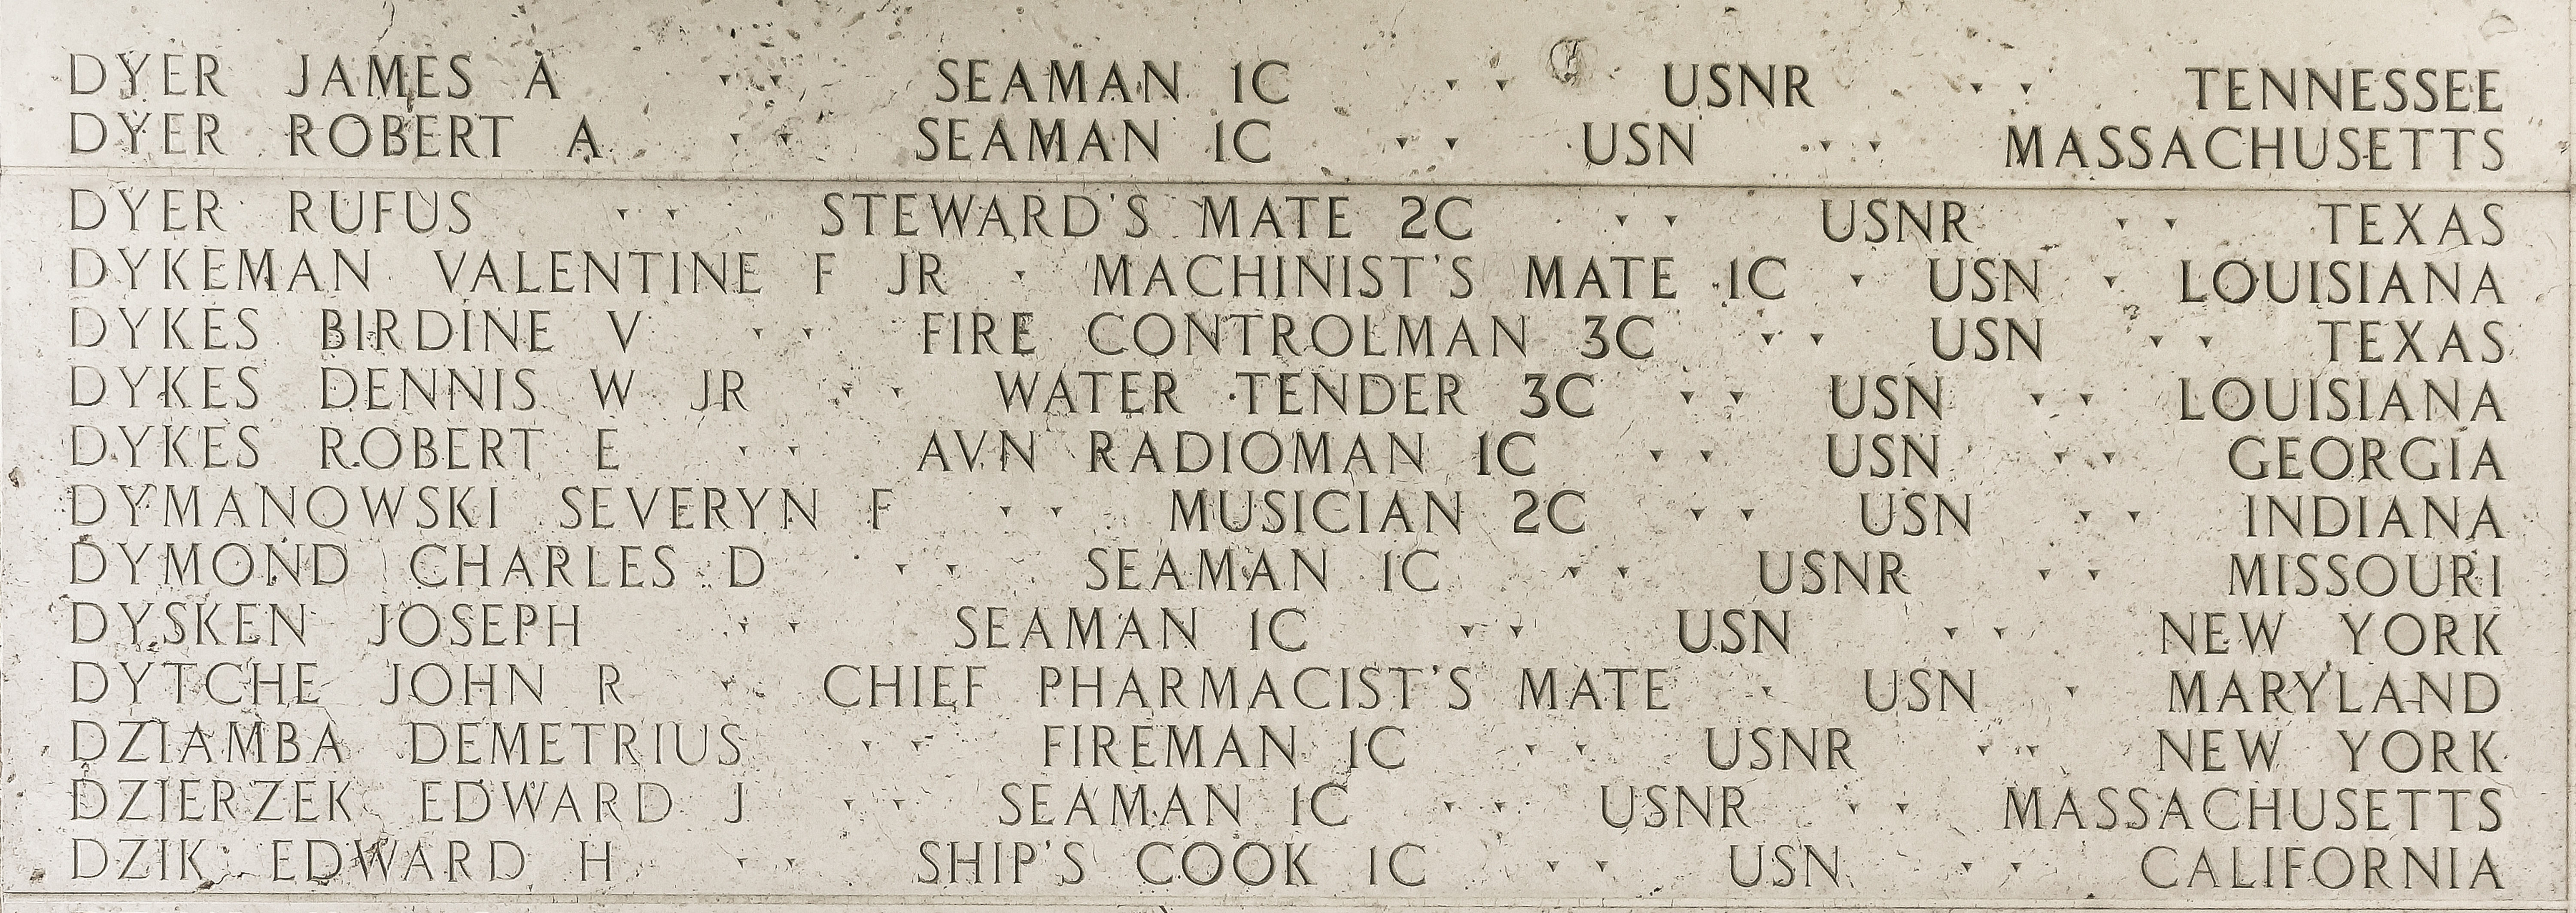 Robert A. Dyer, Seaman First Class